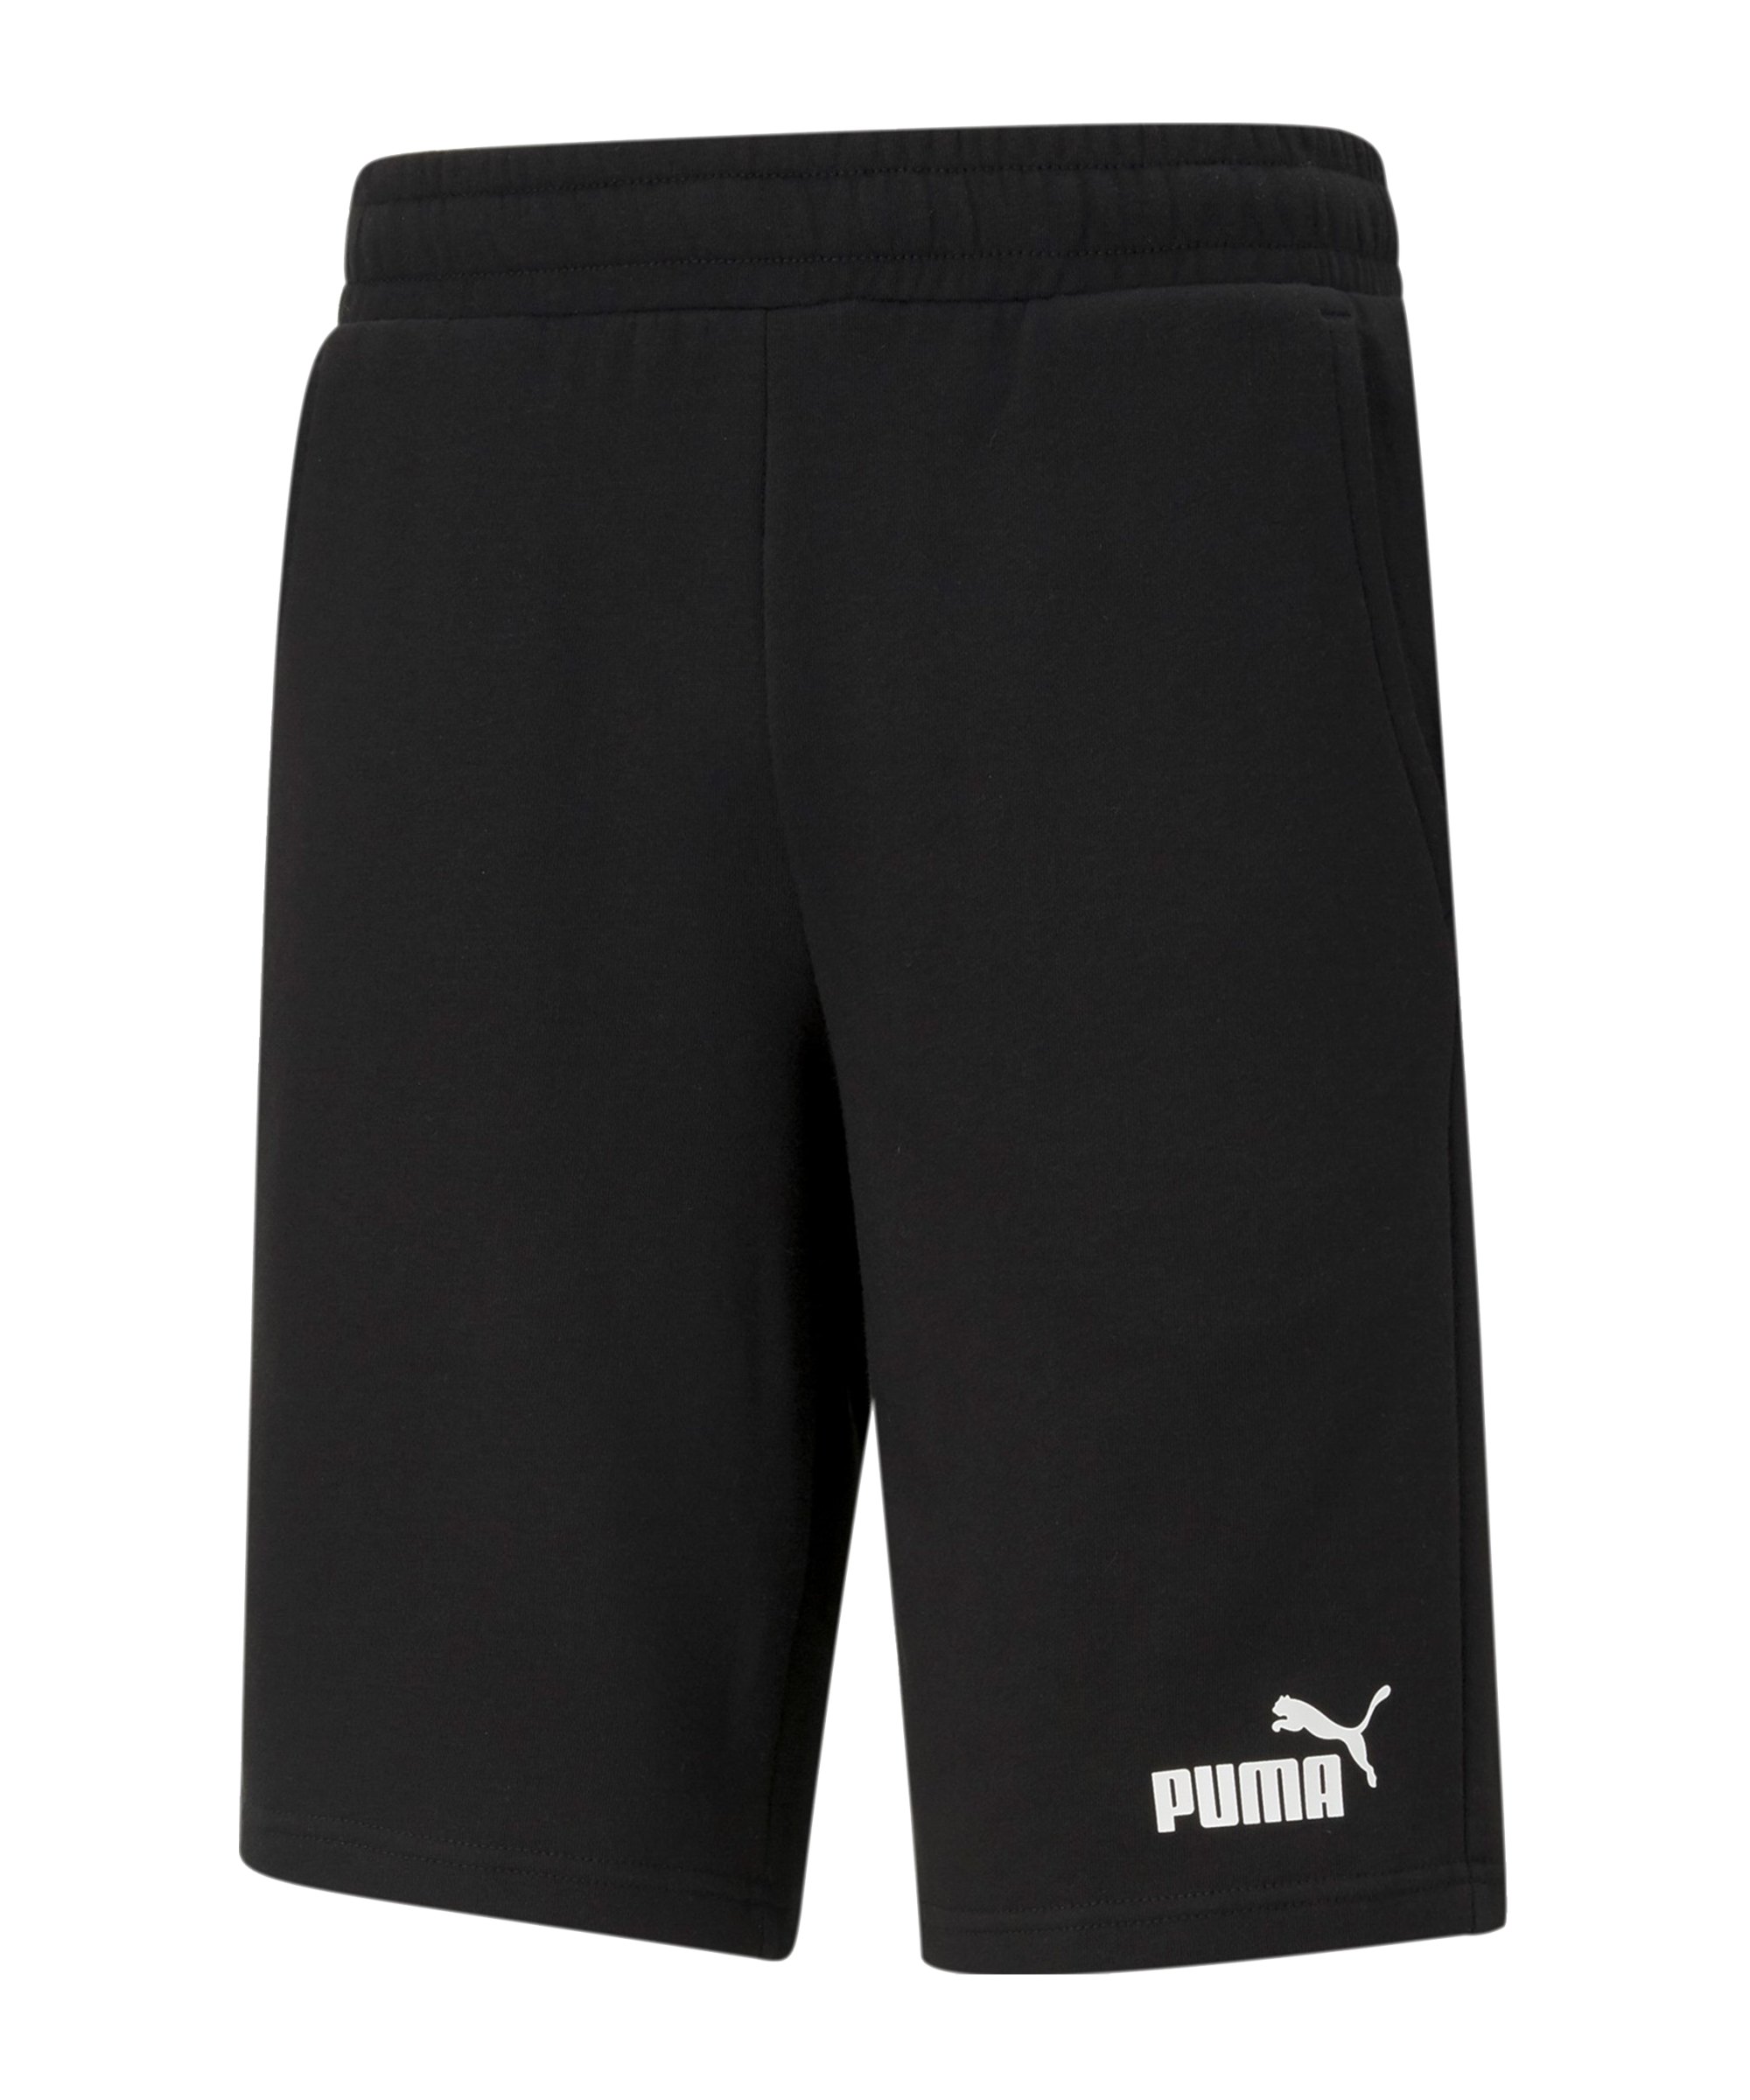 PUMA Essentials 10 Shorts Schwarz F01 - schwarz